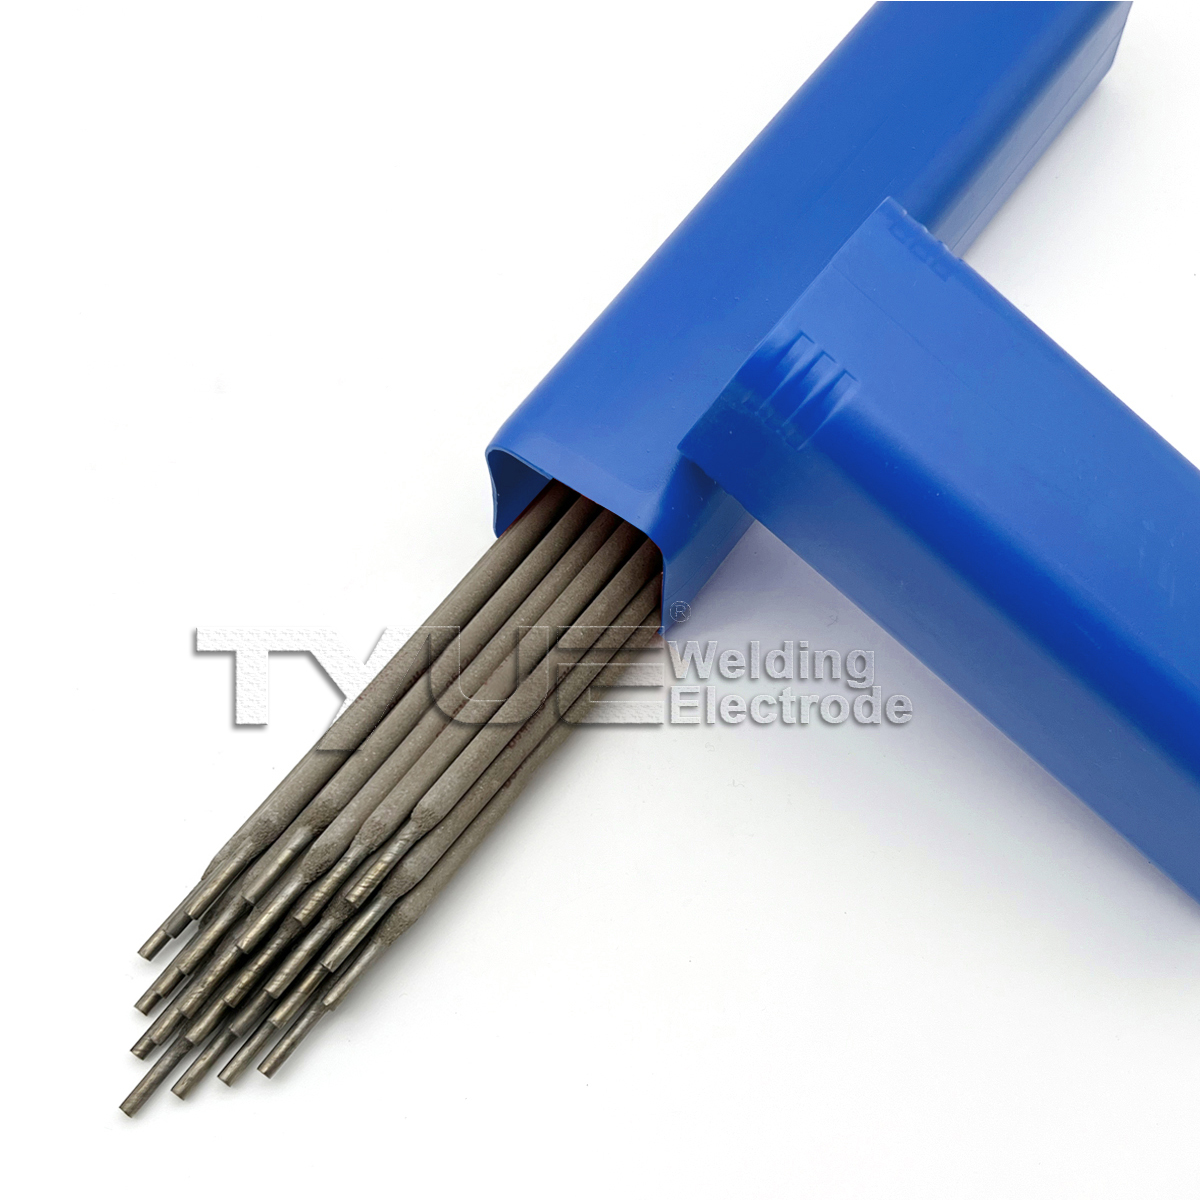 Hardfacing Welding Electrodes DIN 8555 (E1-UM-350) Surfacing Welding Rods, Wear Resistant Stick Electrode